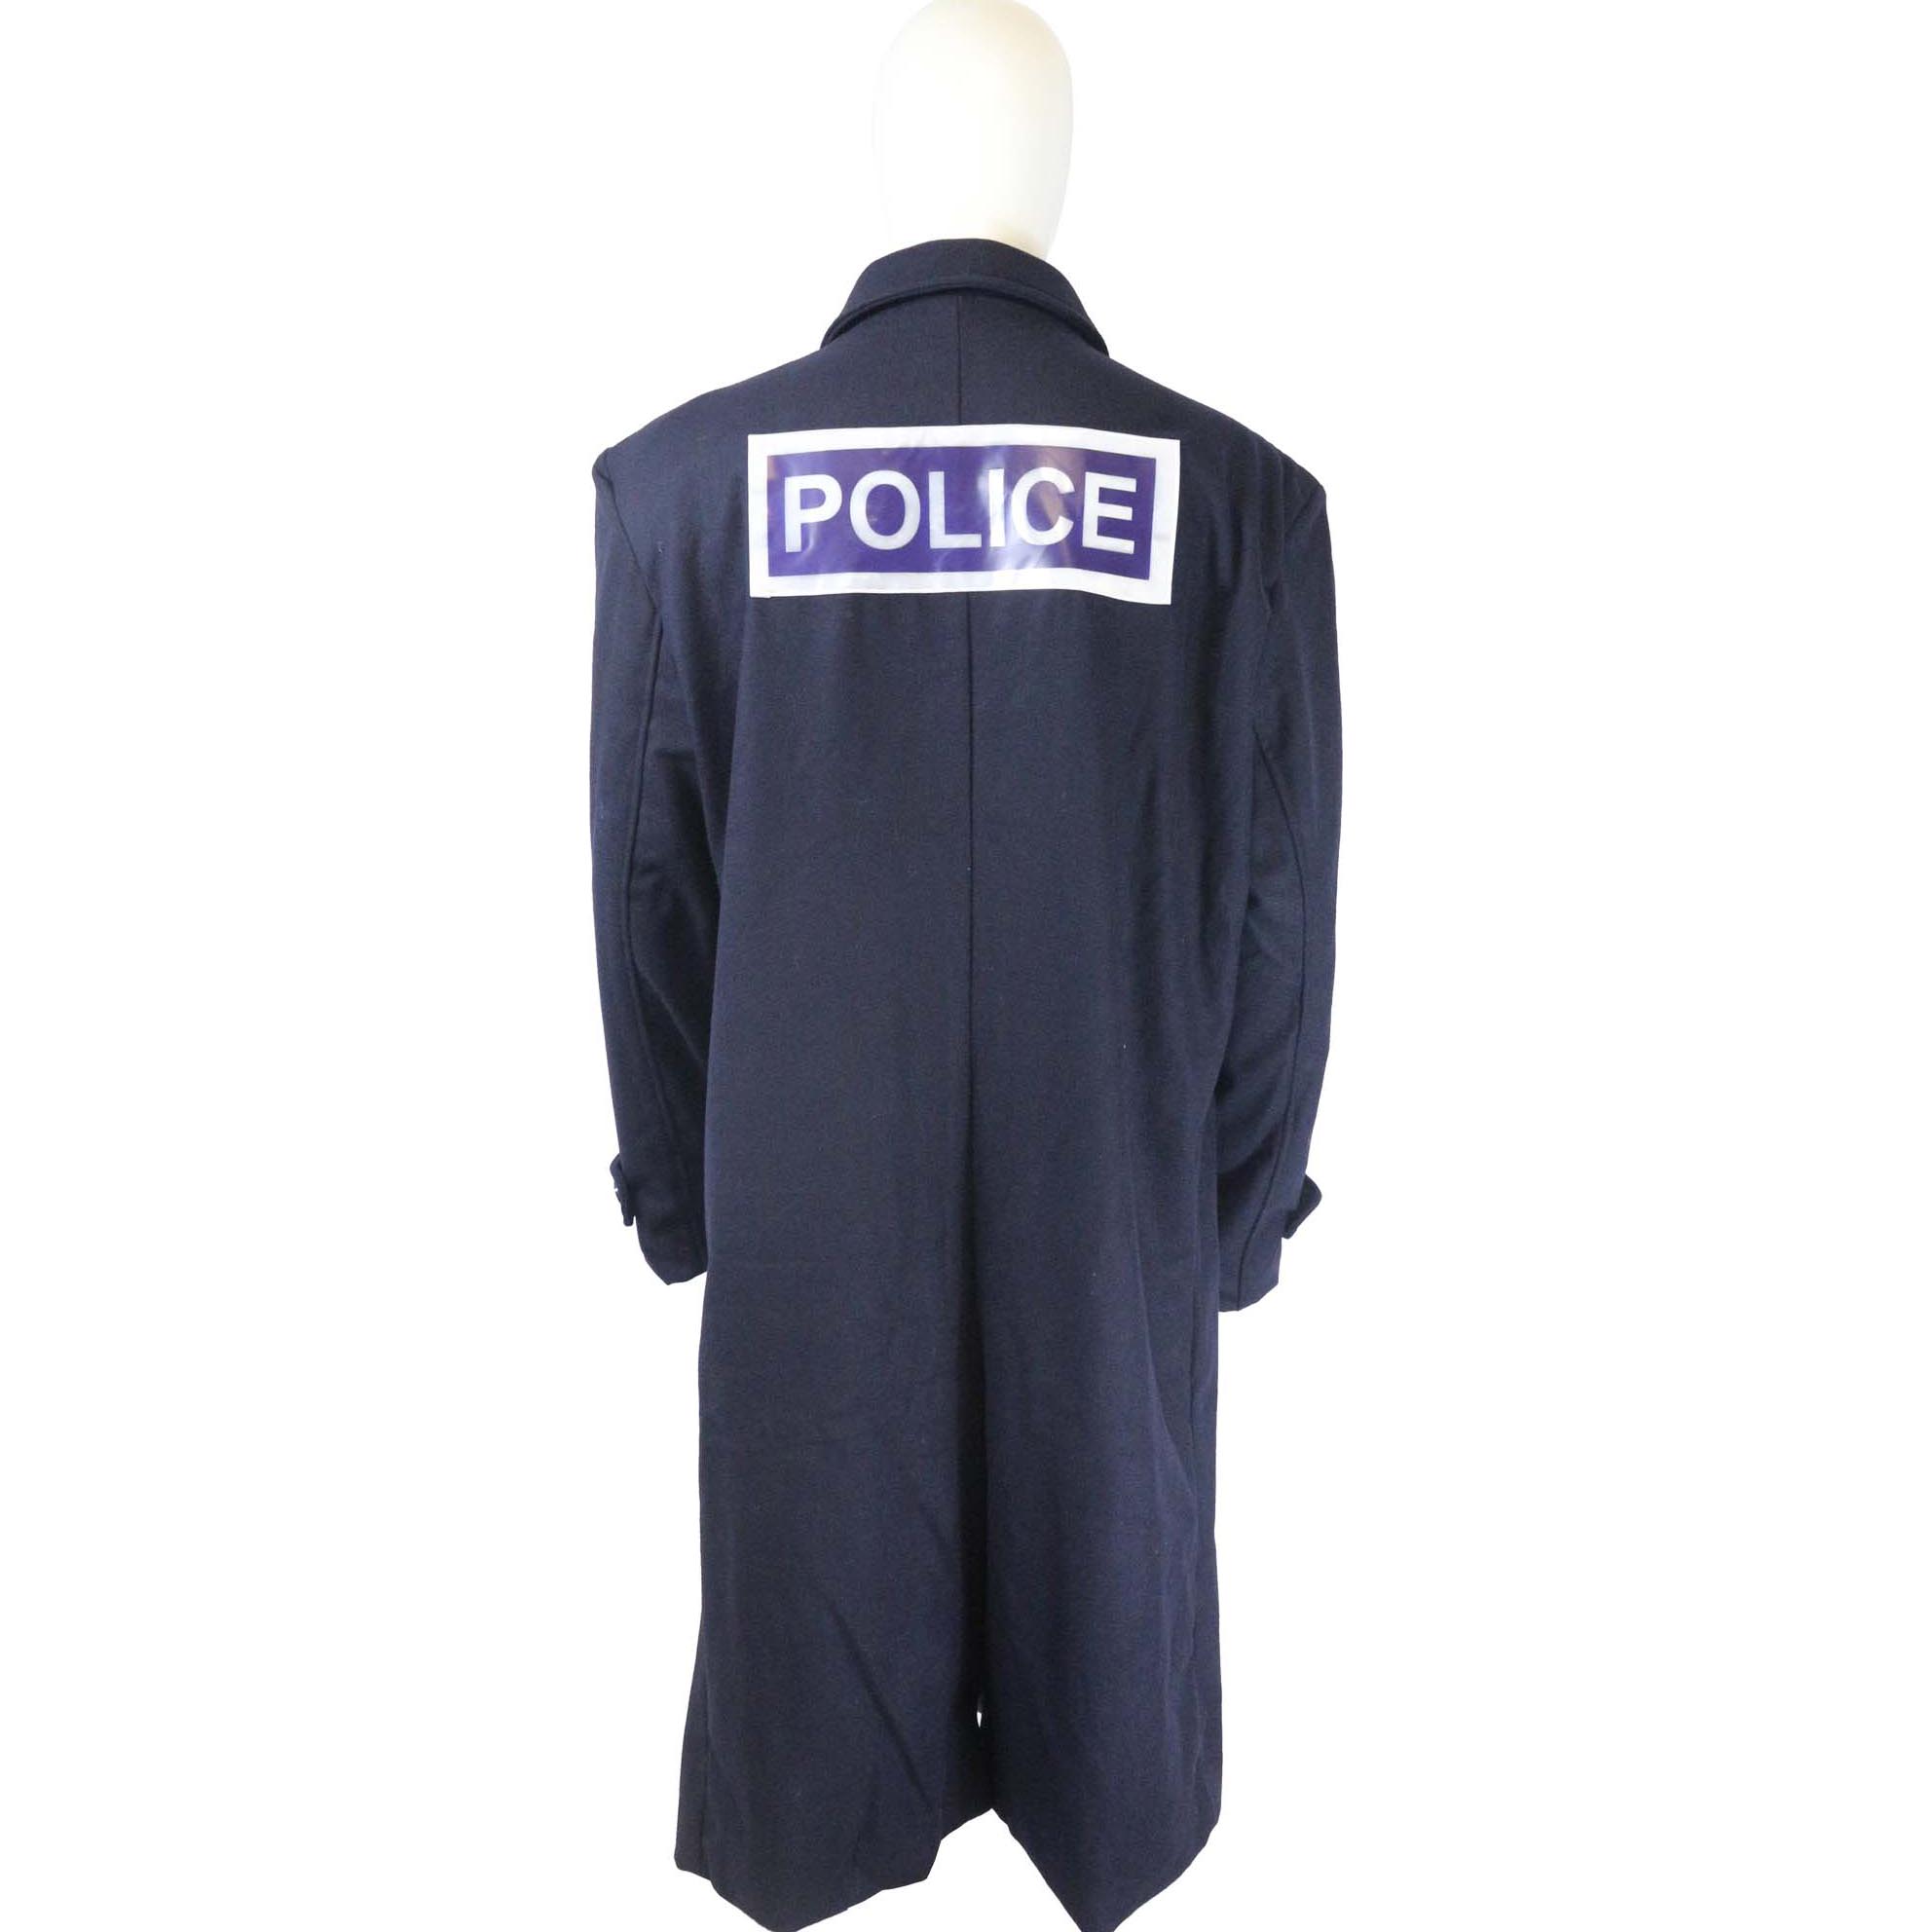 Police coat 